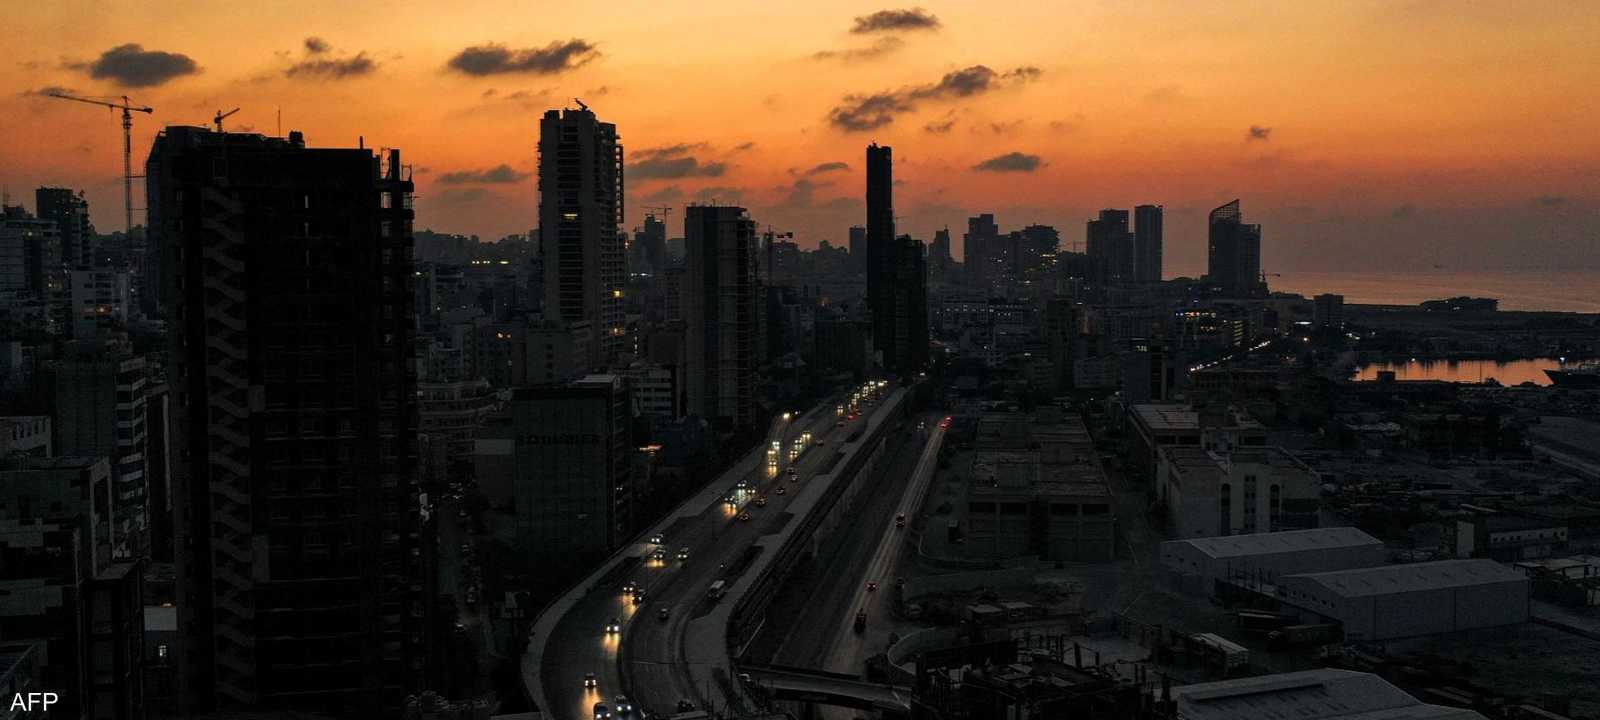 انقطاع الكهرباء سيفاقم الضغوط على المولدات الخاصة في لبنان